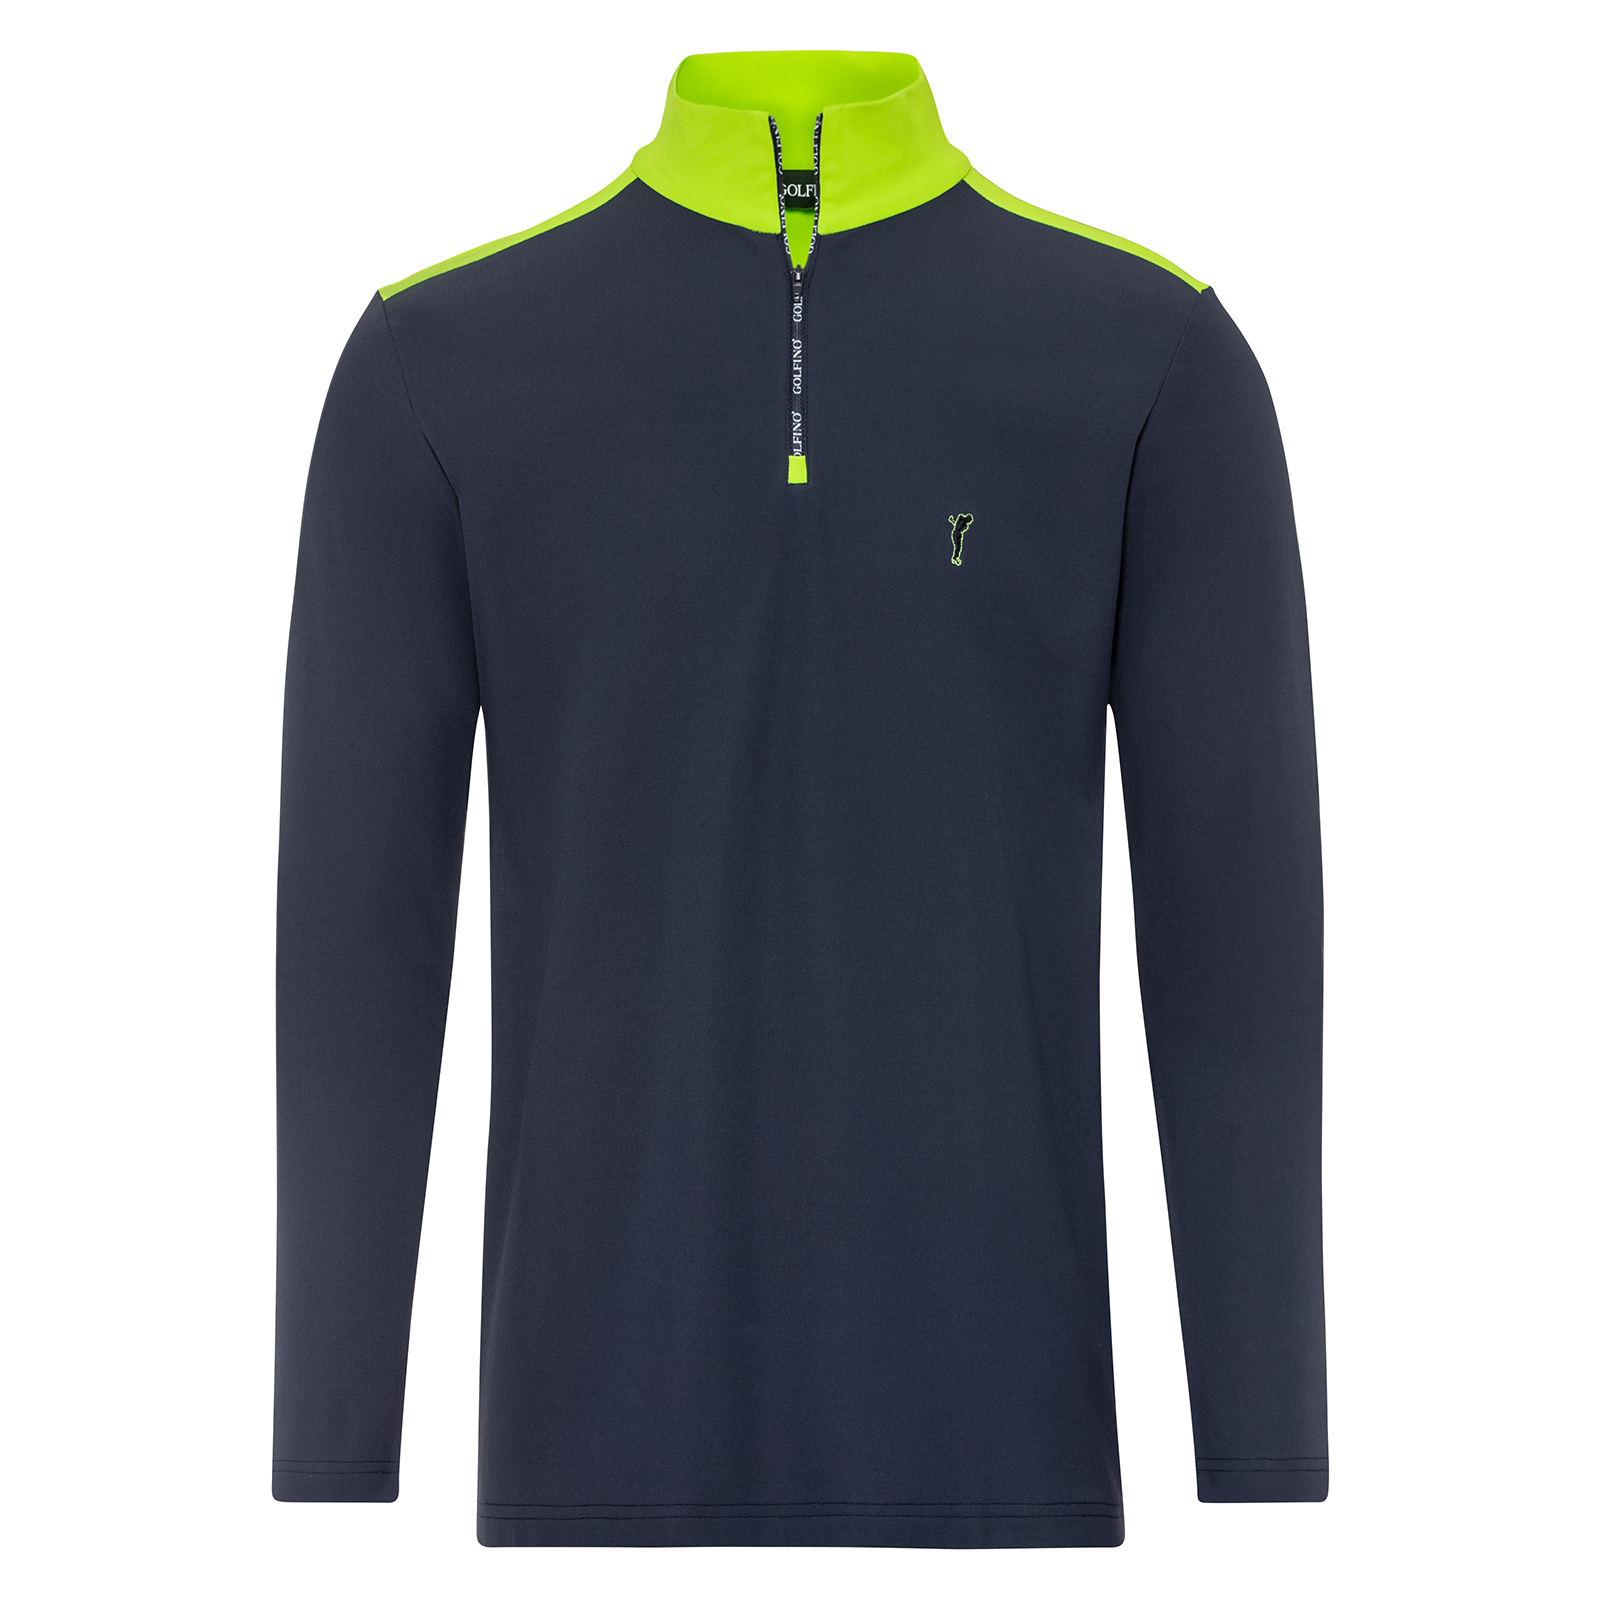 Men’s comfortable half-zip golf shirt with fleece lining